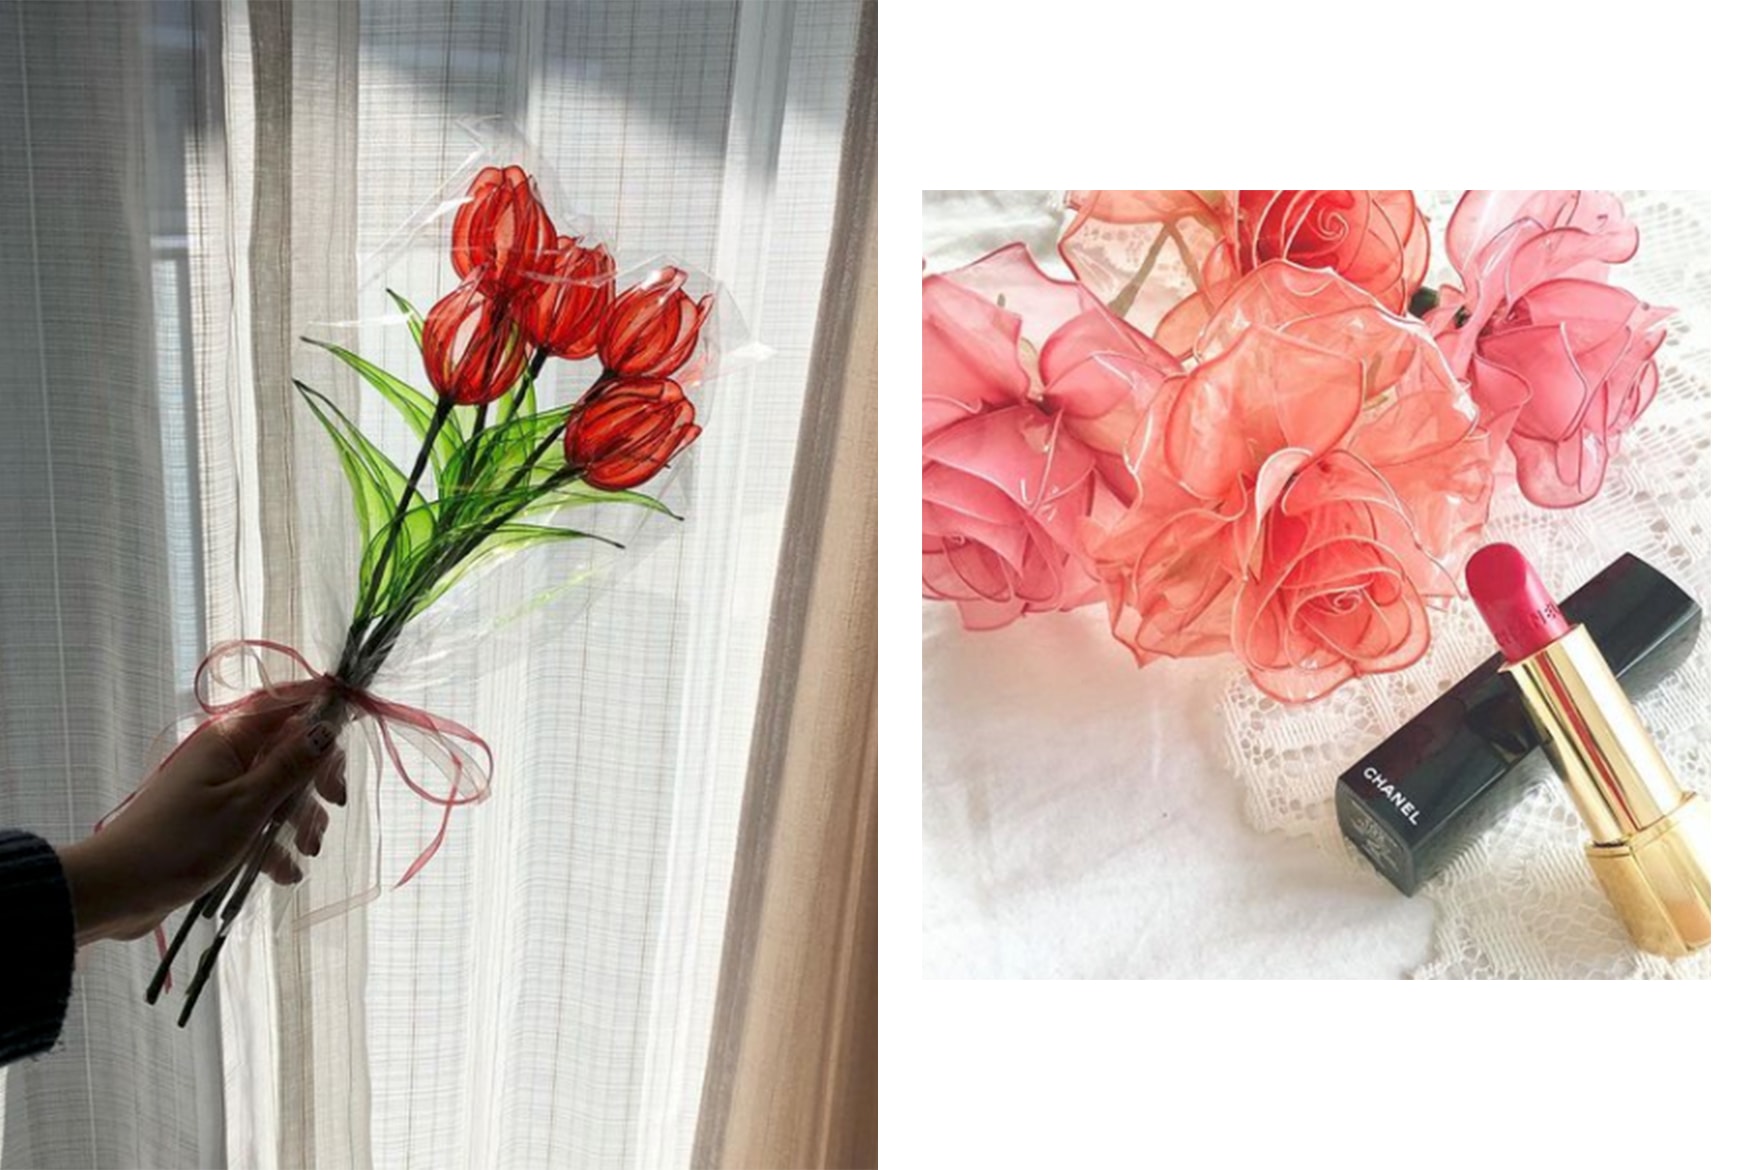 japanese instagram hit uv dip art wire flowers home decor